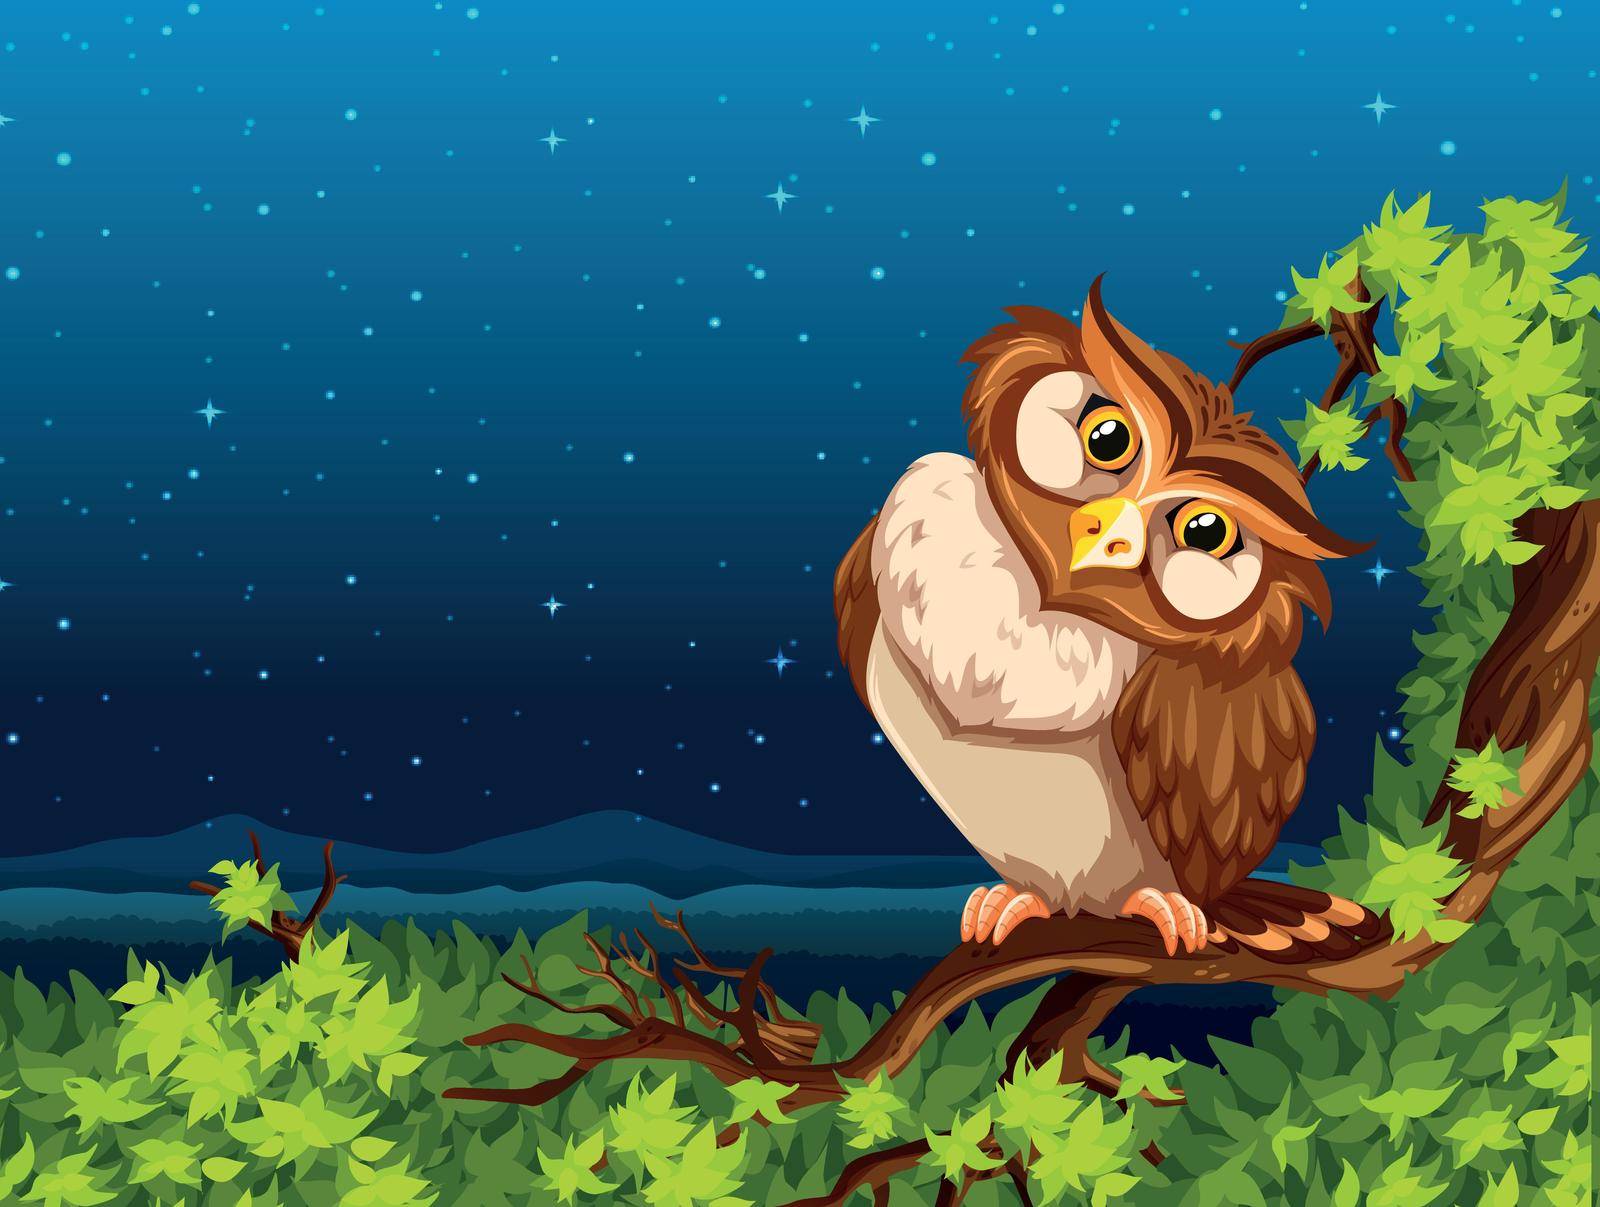 A owl at night illustration